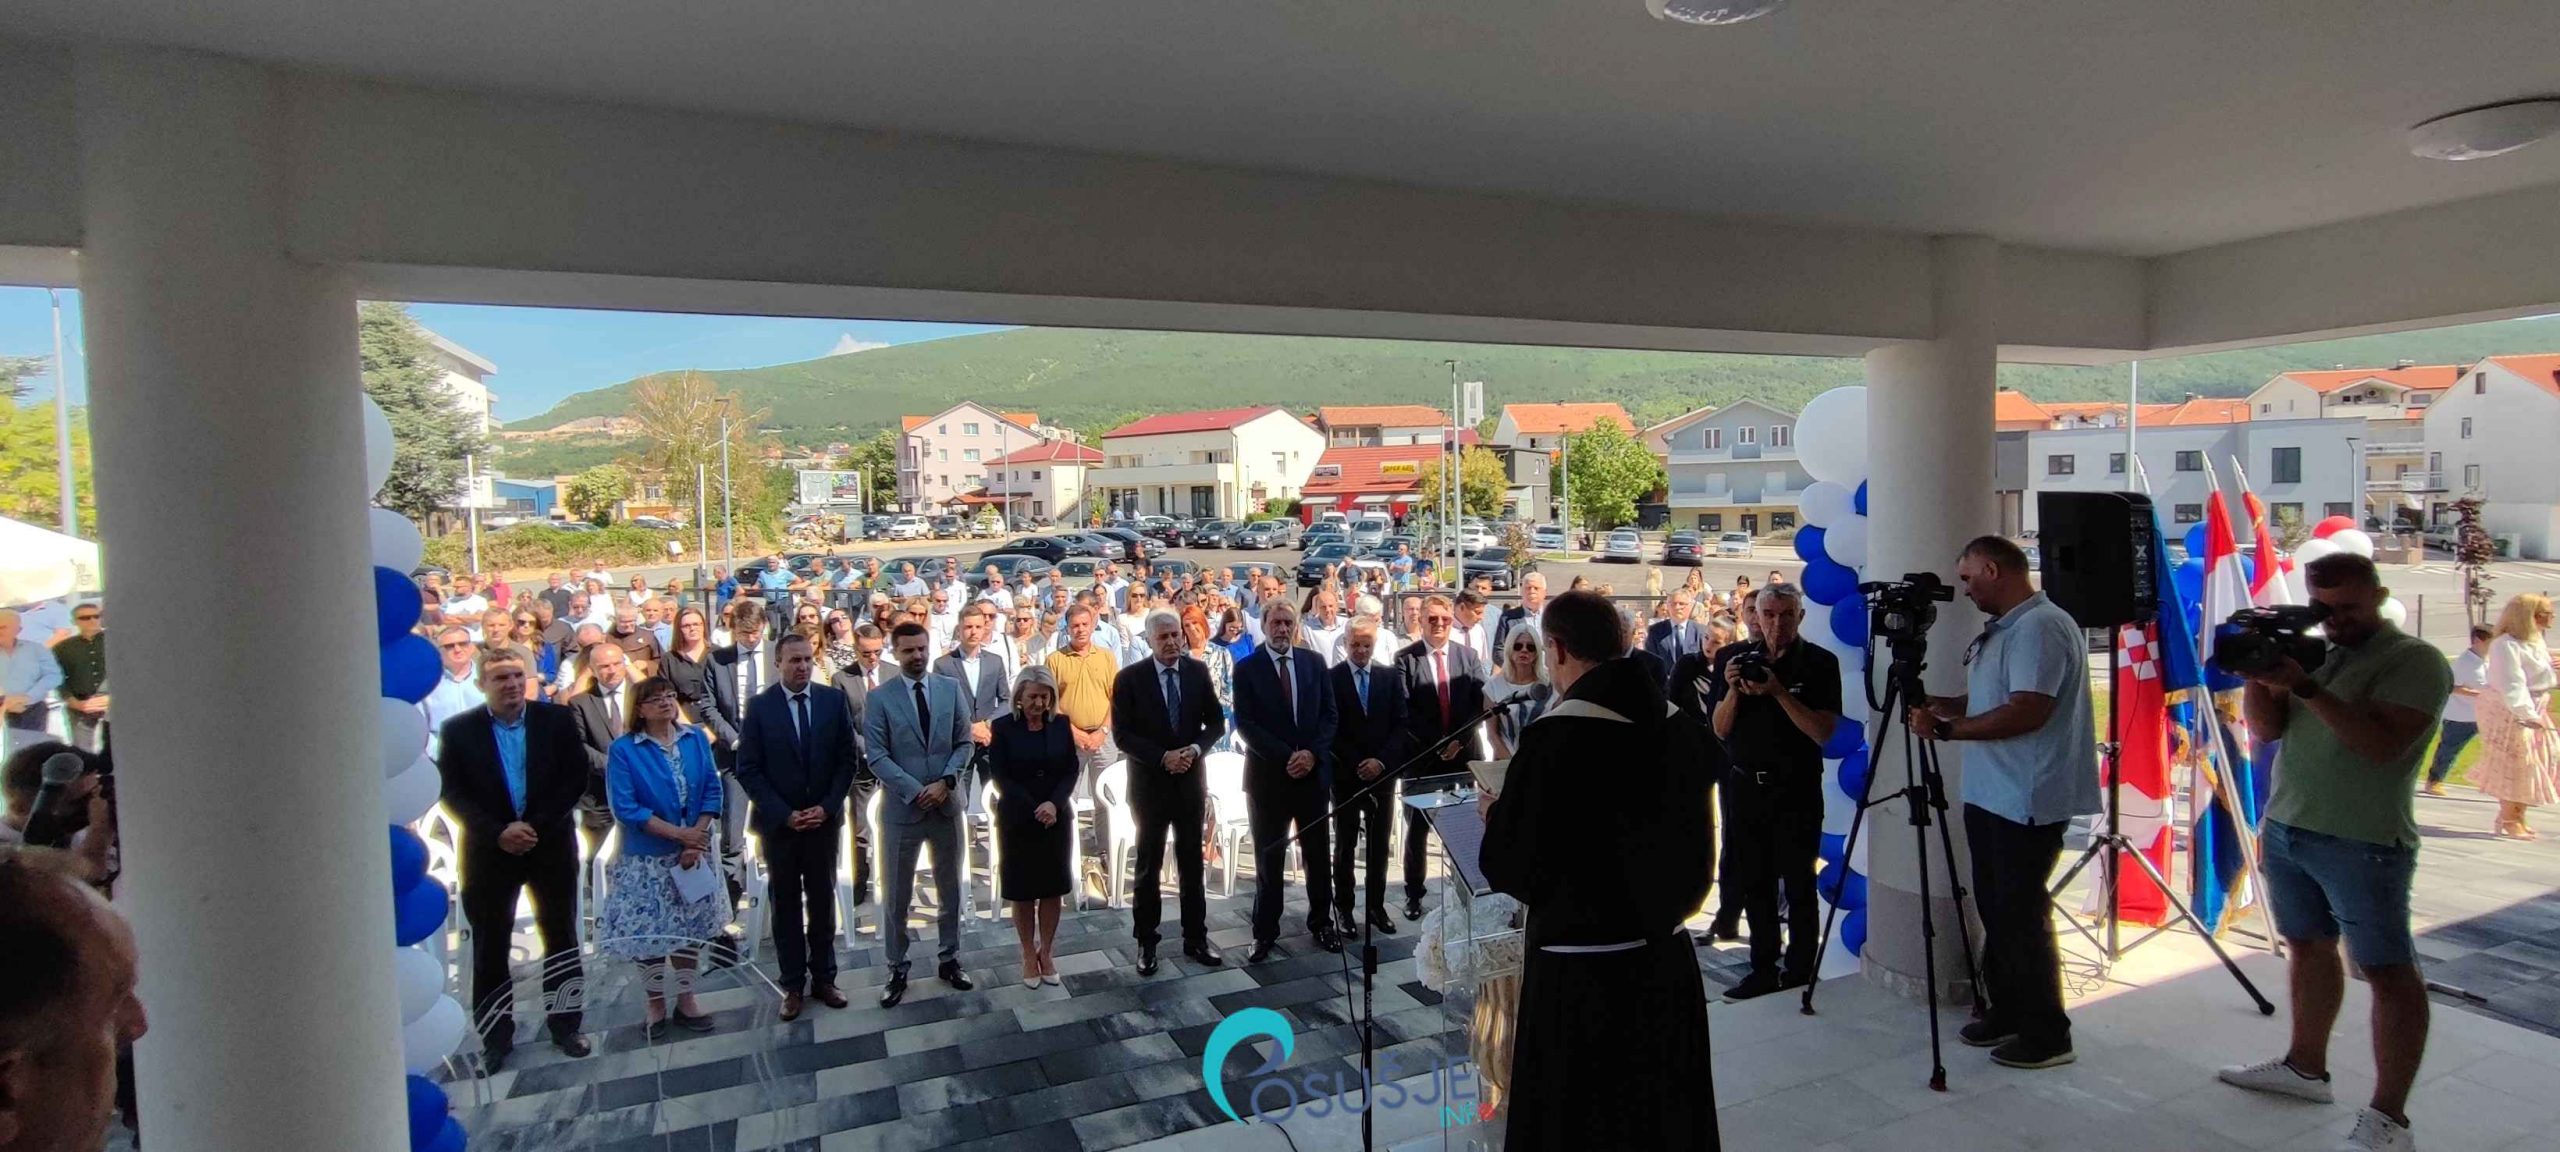 [FOTO] Velebni događaj – Otvorena nova osnova škola Fra Petra Bakule